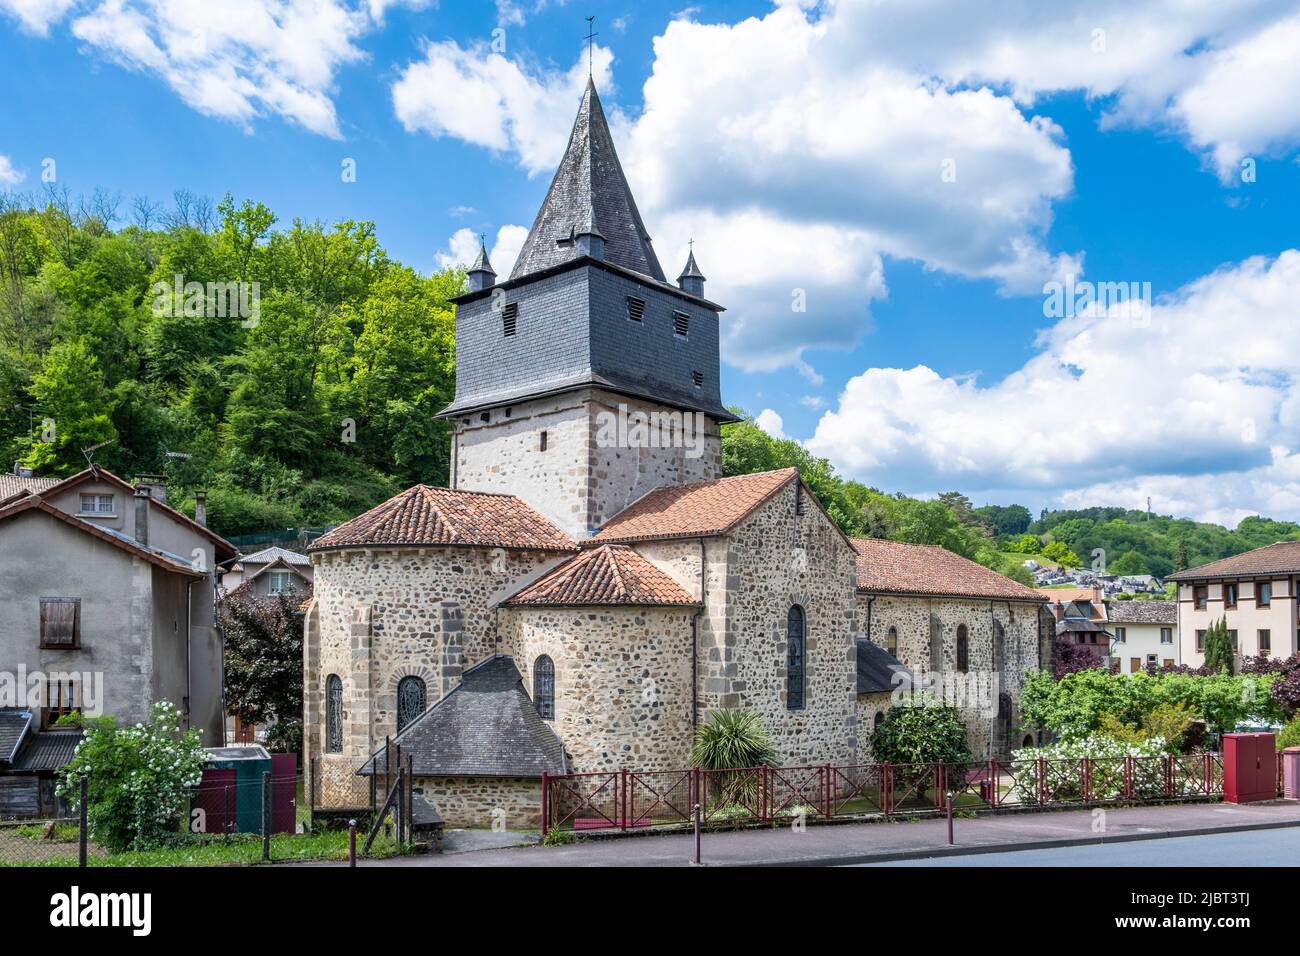 France, Correze, Saint Calmine church Stock Photo